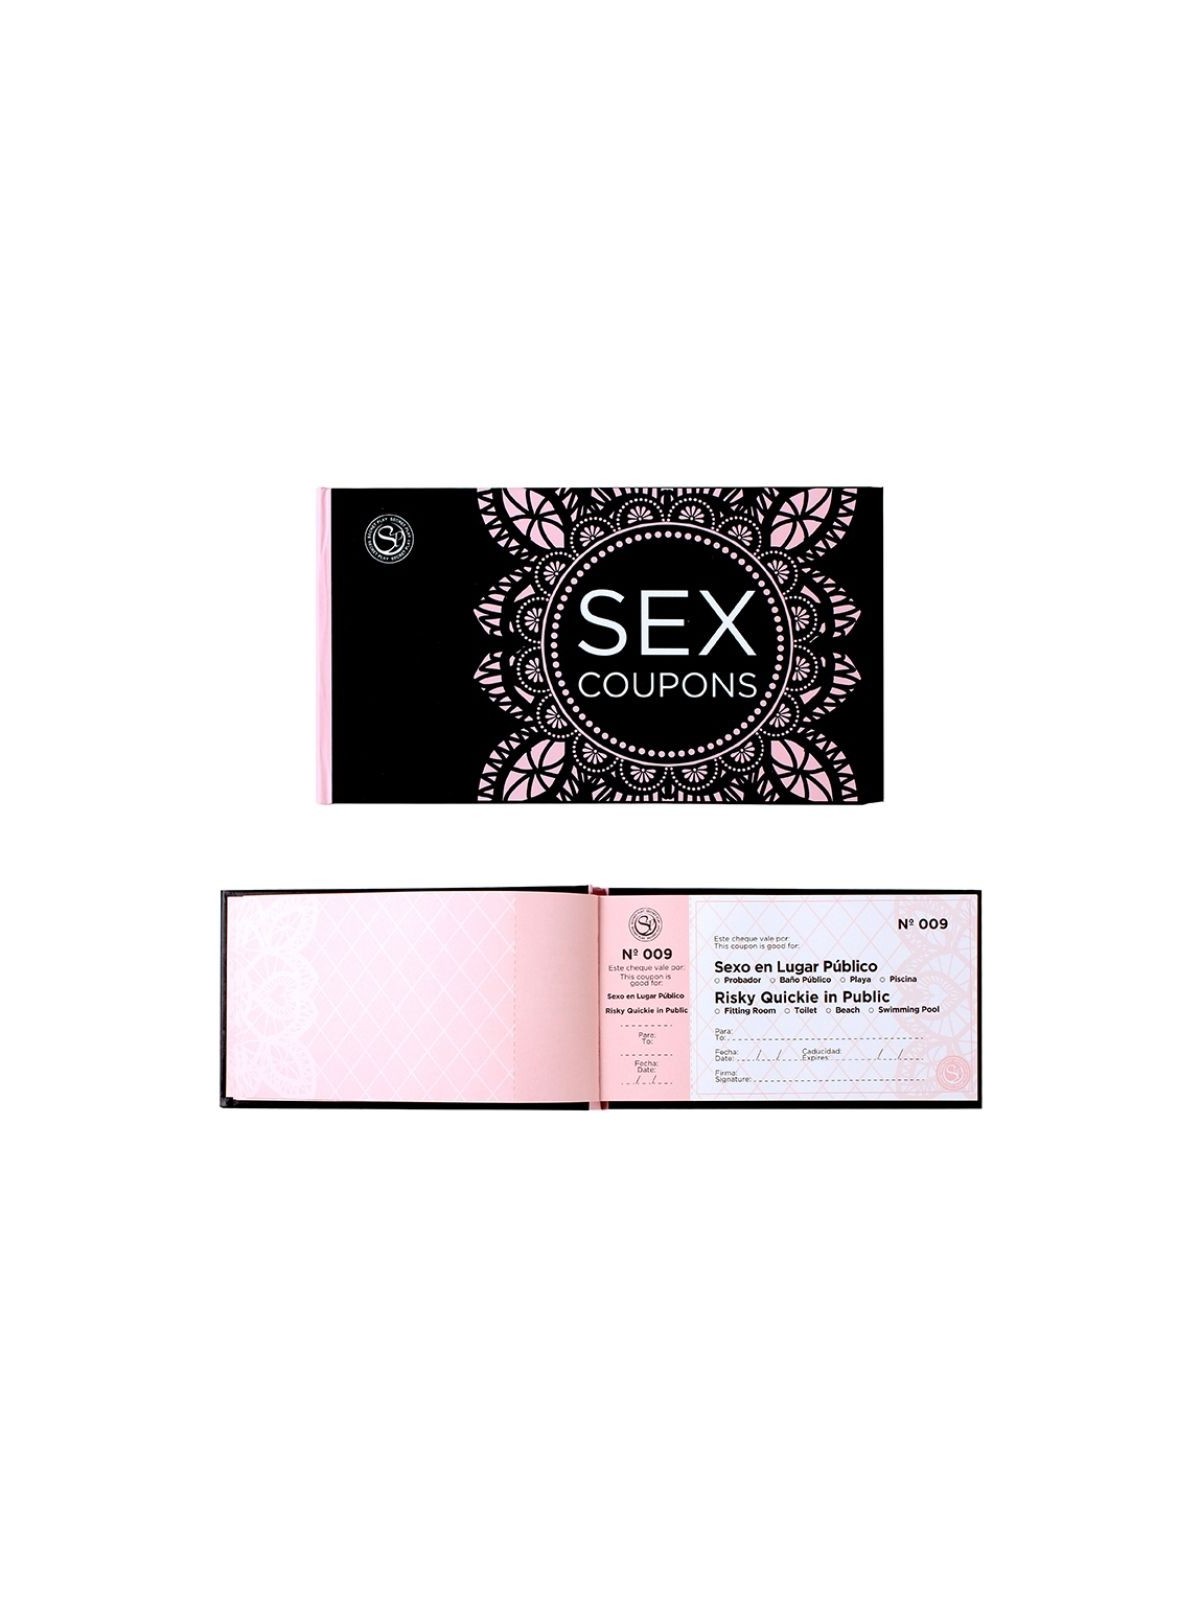 Secreplay Sex Coupons Vales De Canje Sensuales - Comprar Talonario erótico Secretplay - Talonarios eróticos (1)